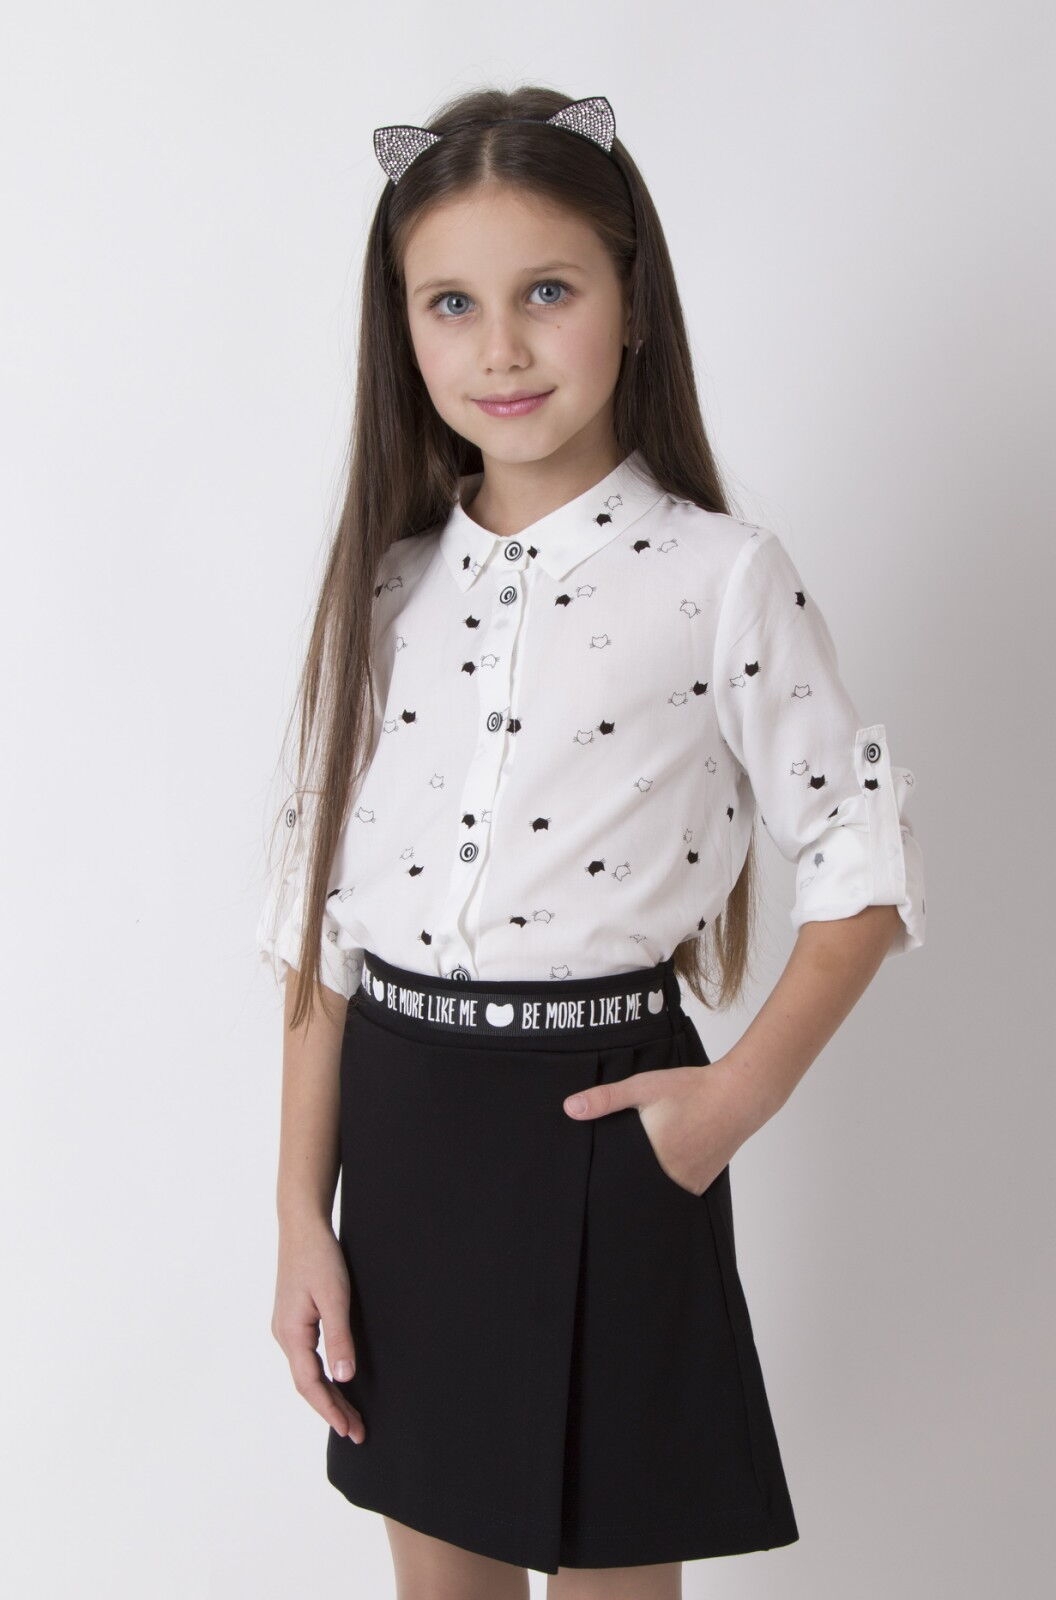 Блузка для девочки Mevis Коты белая 4412-01 - картинка